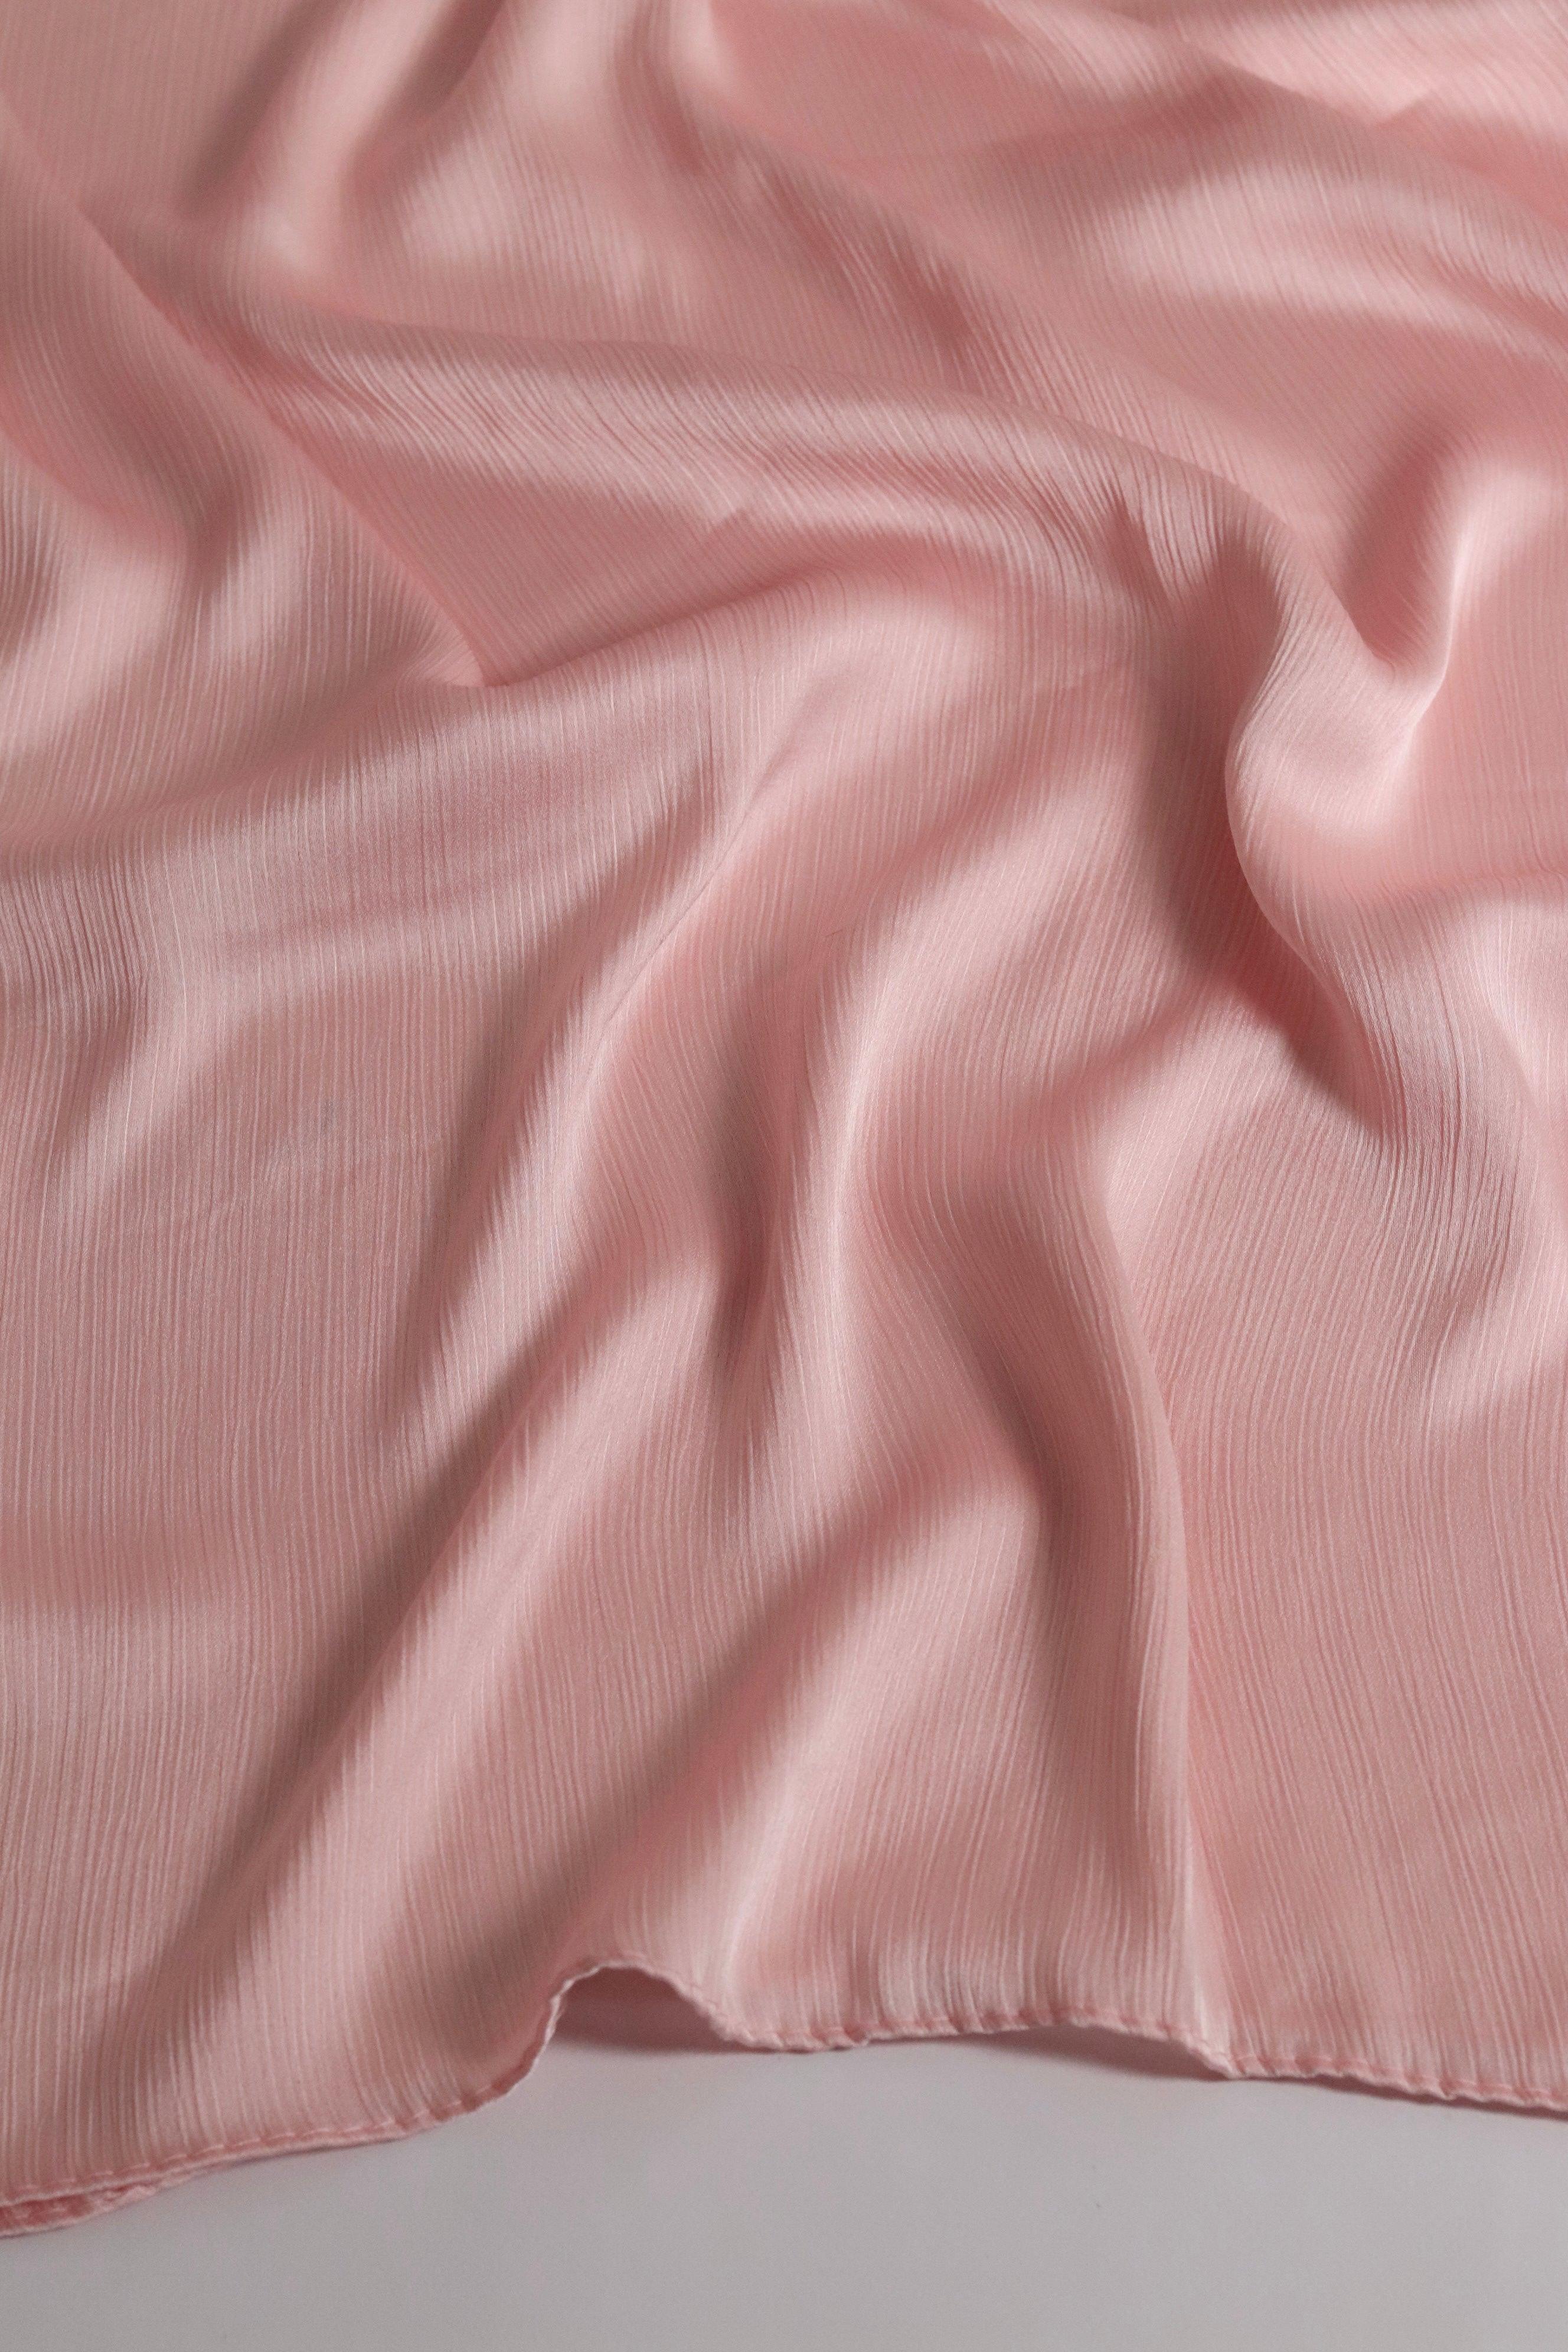 Signature Textured Satin - Nude Pink -